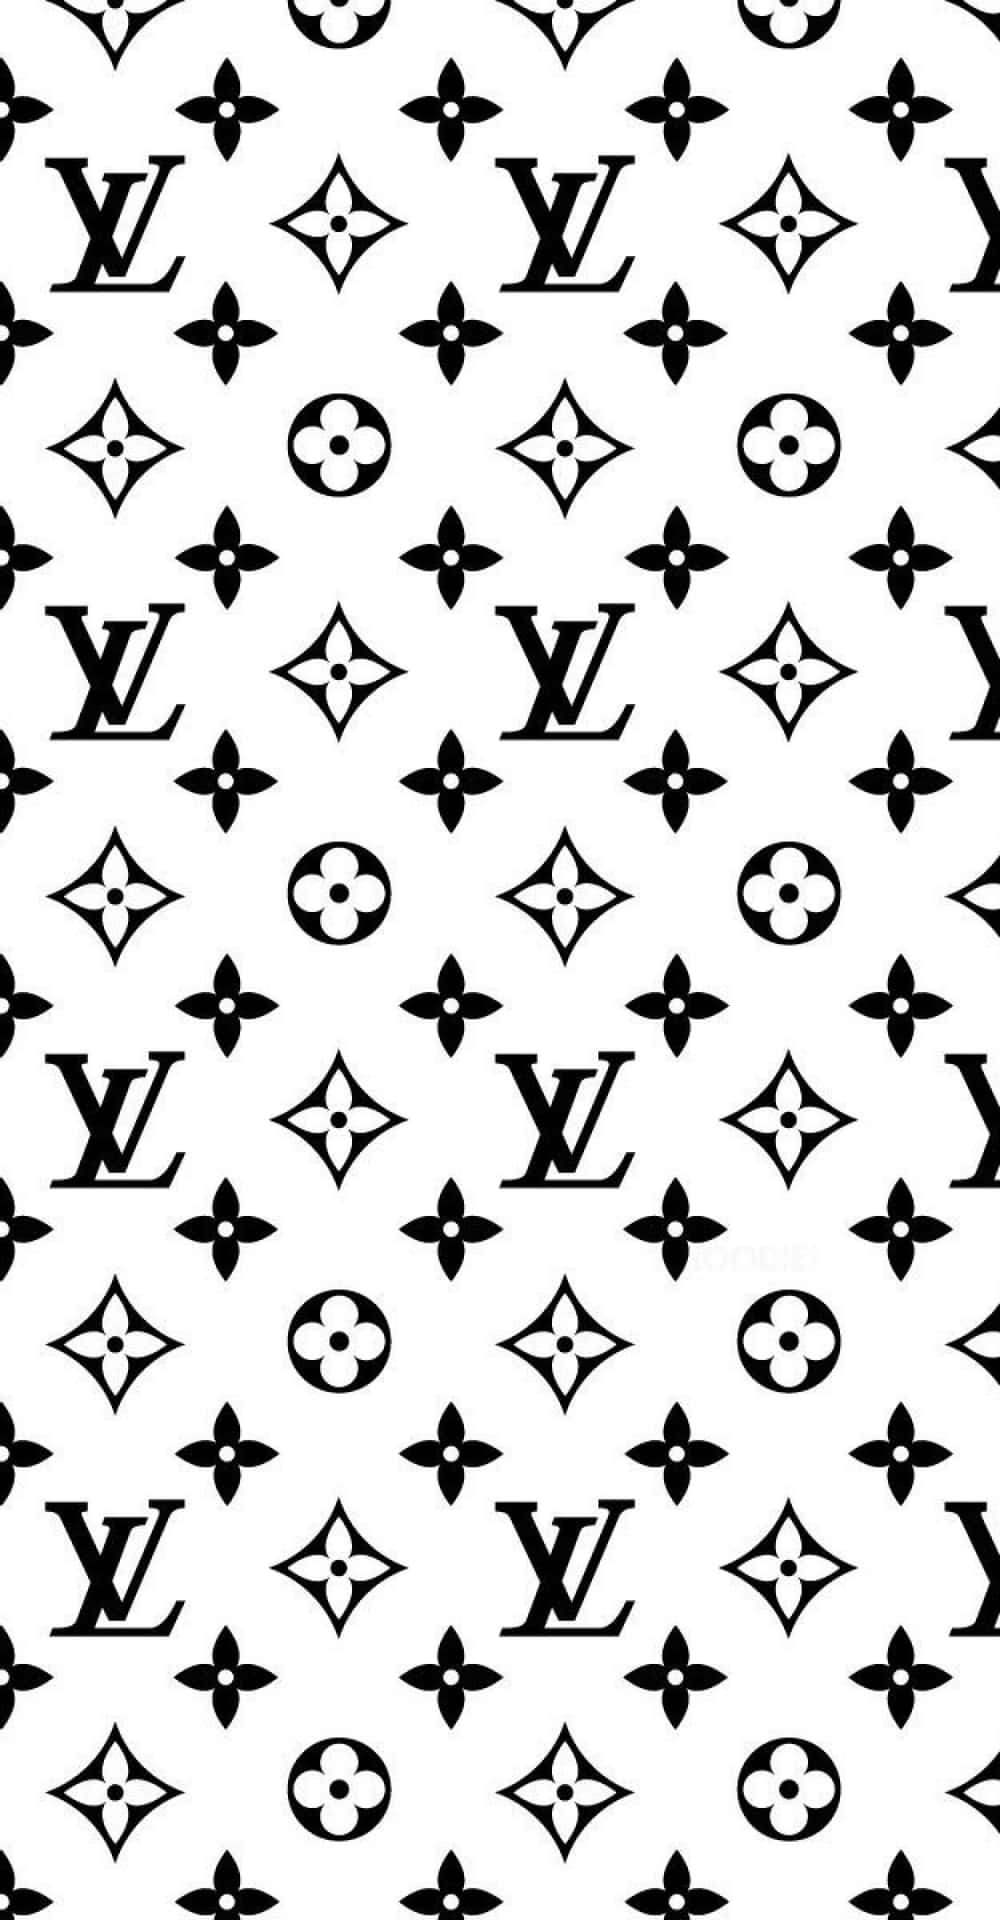 Visaupp Din Stiliga Louis Vuitton-tryck På Datorn Eller Mobilen. Wallpaper